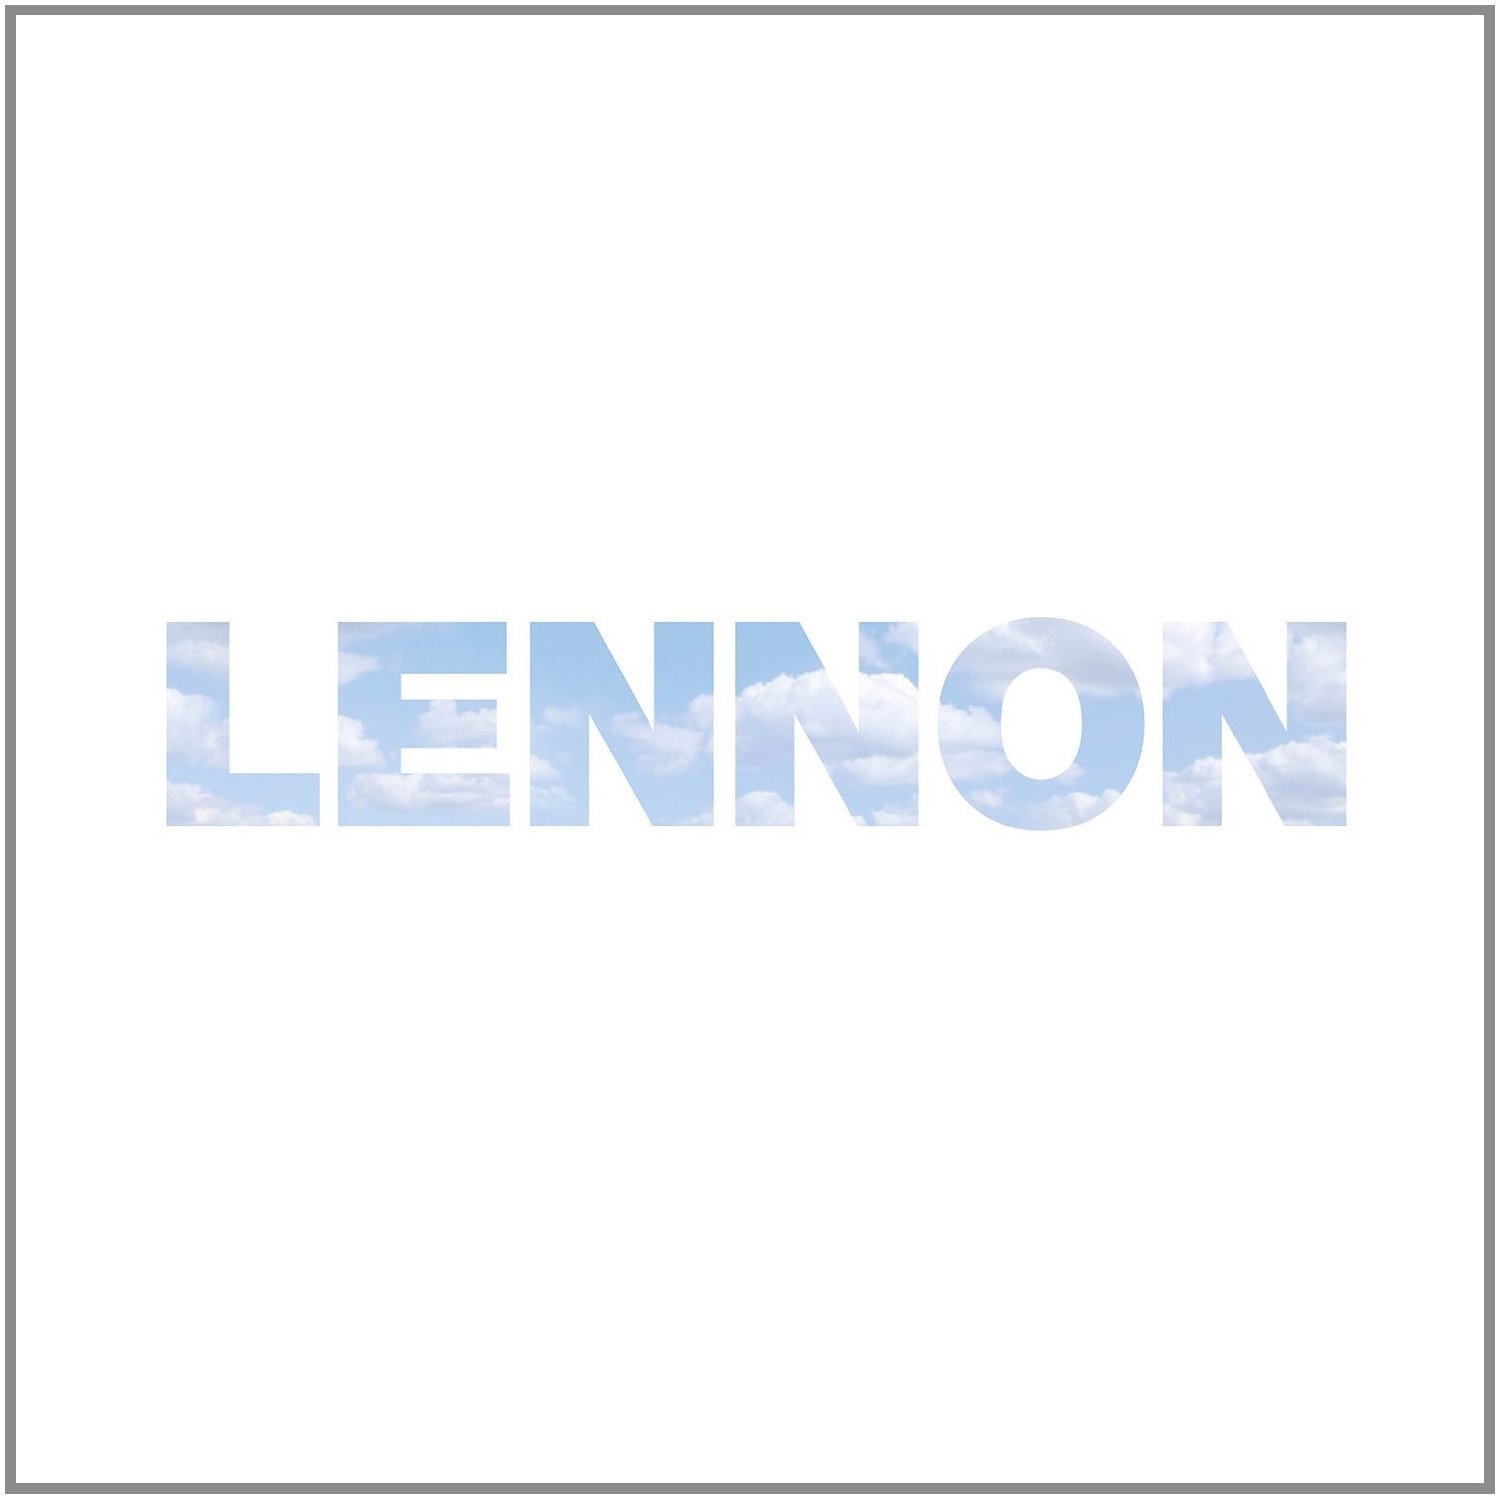 Disque vinyle John Lennon - Lennon (9 LP)